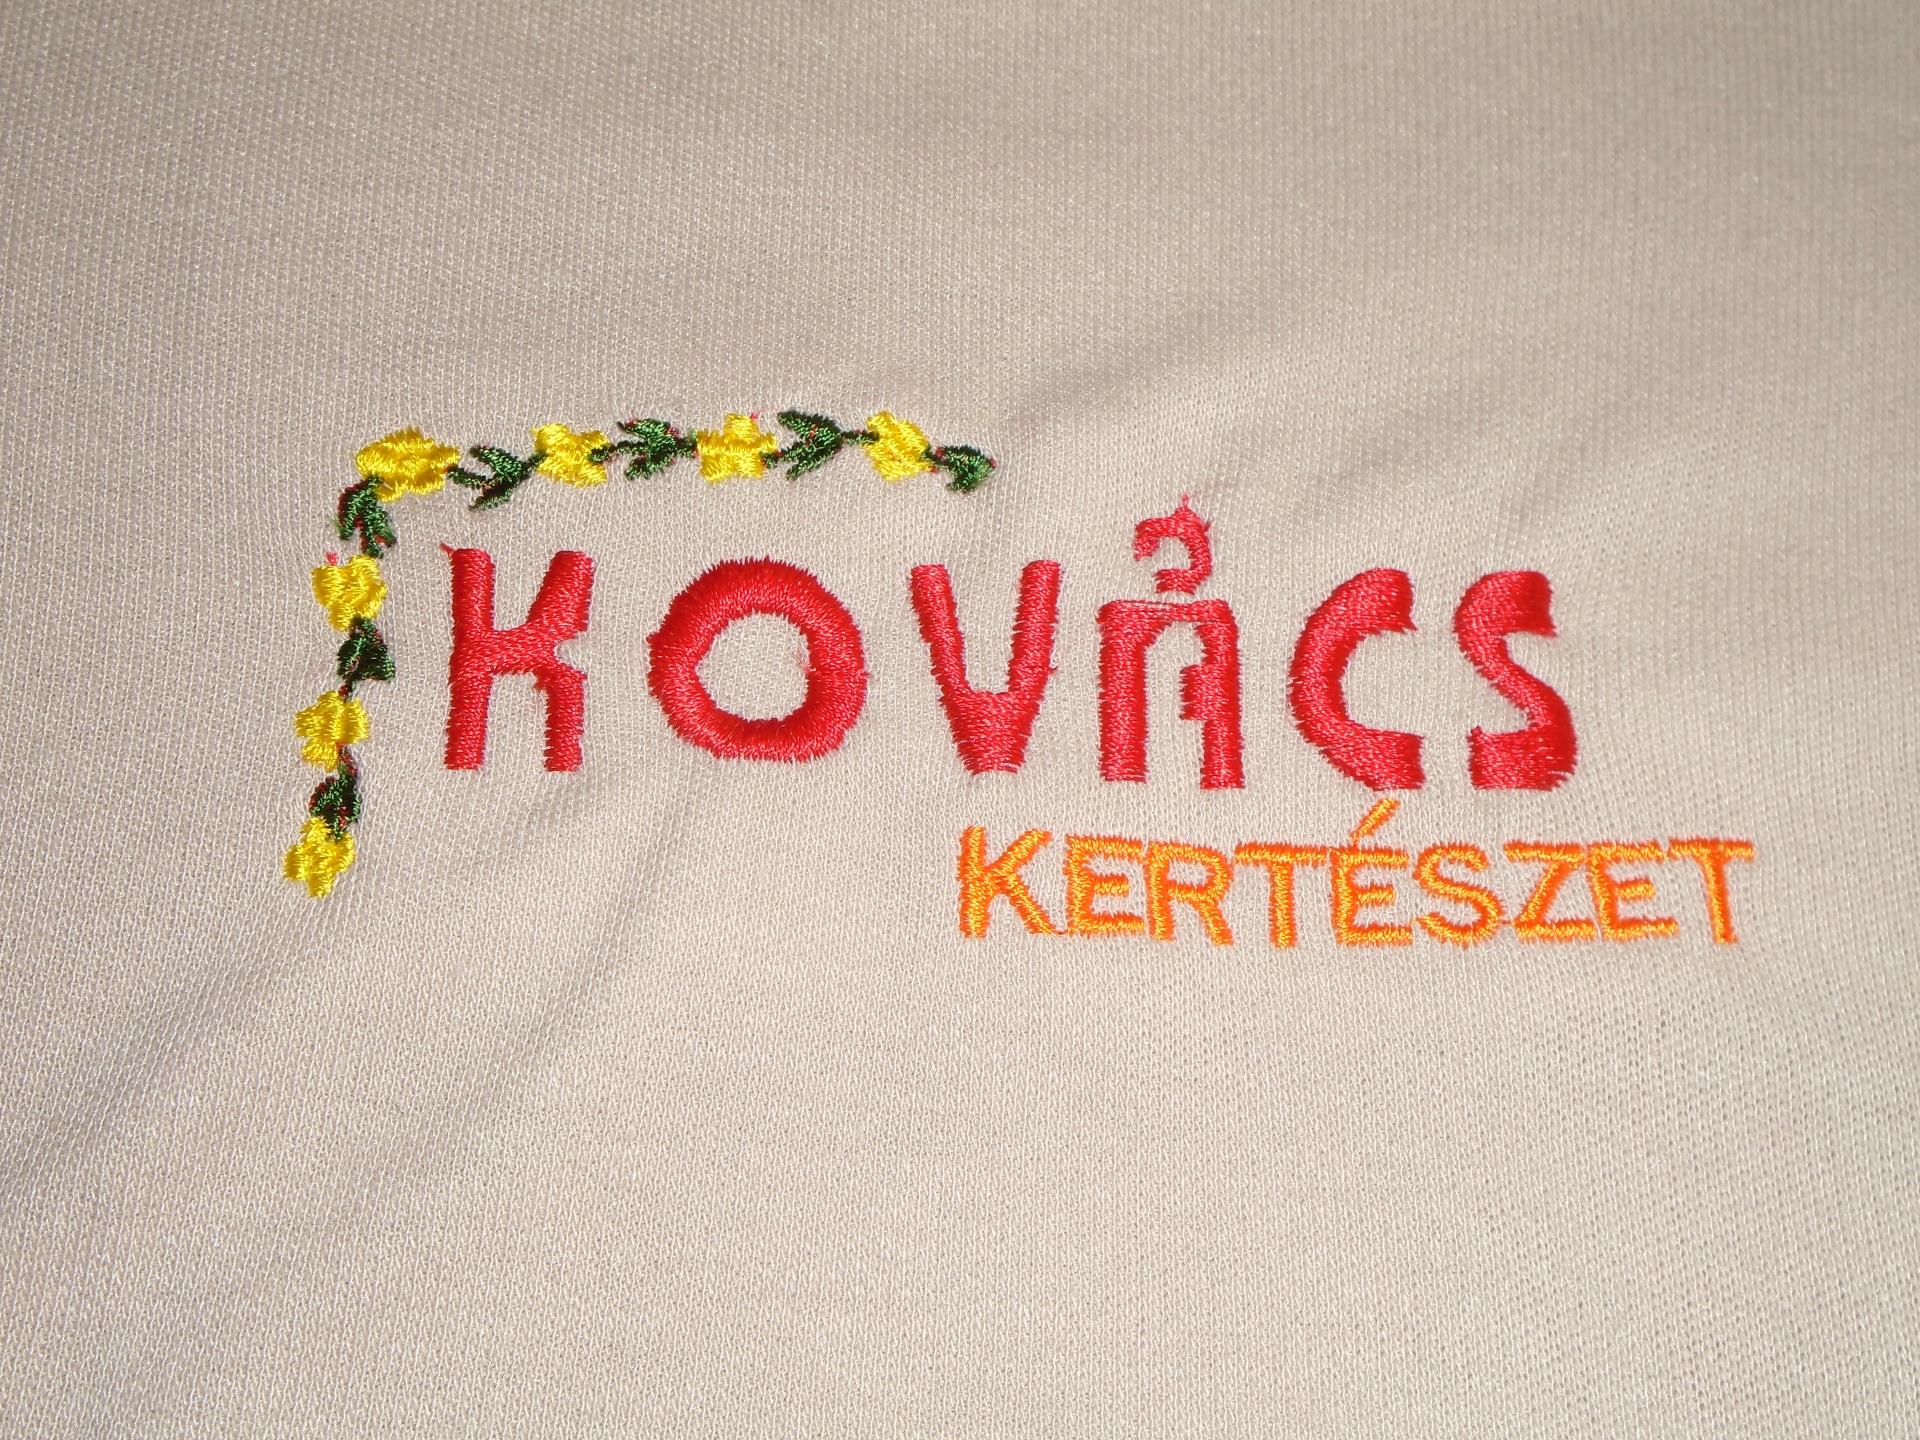 Kovács Kertészet